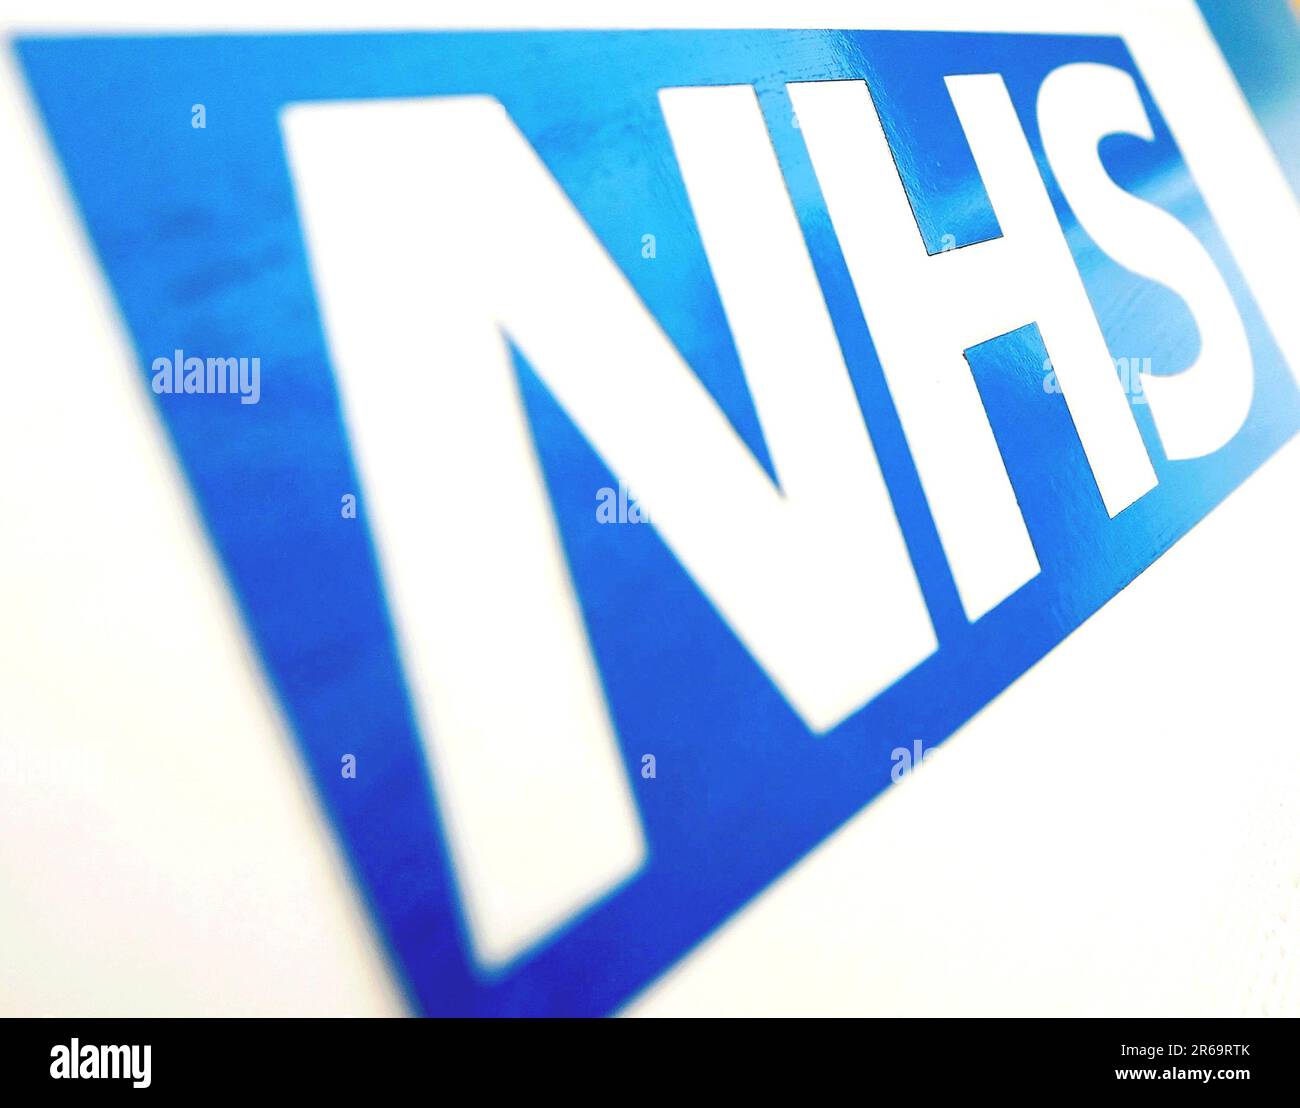 Photo du dossier datée du 06/11/10 du logo du NHS, car de plus en plus de gestionnaires du NHS pourraient aider à libérer du temps pour les médecins et les infirmières, selon un rapport. Banque D'Images